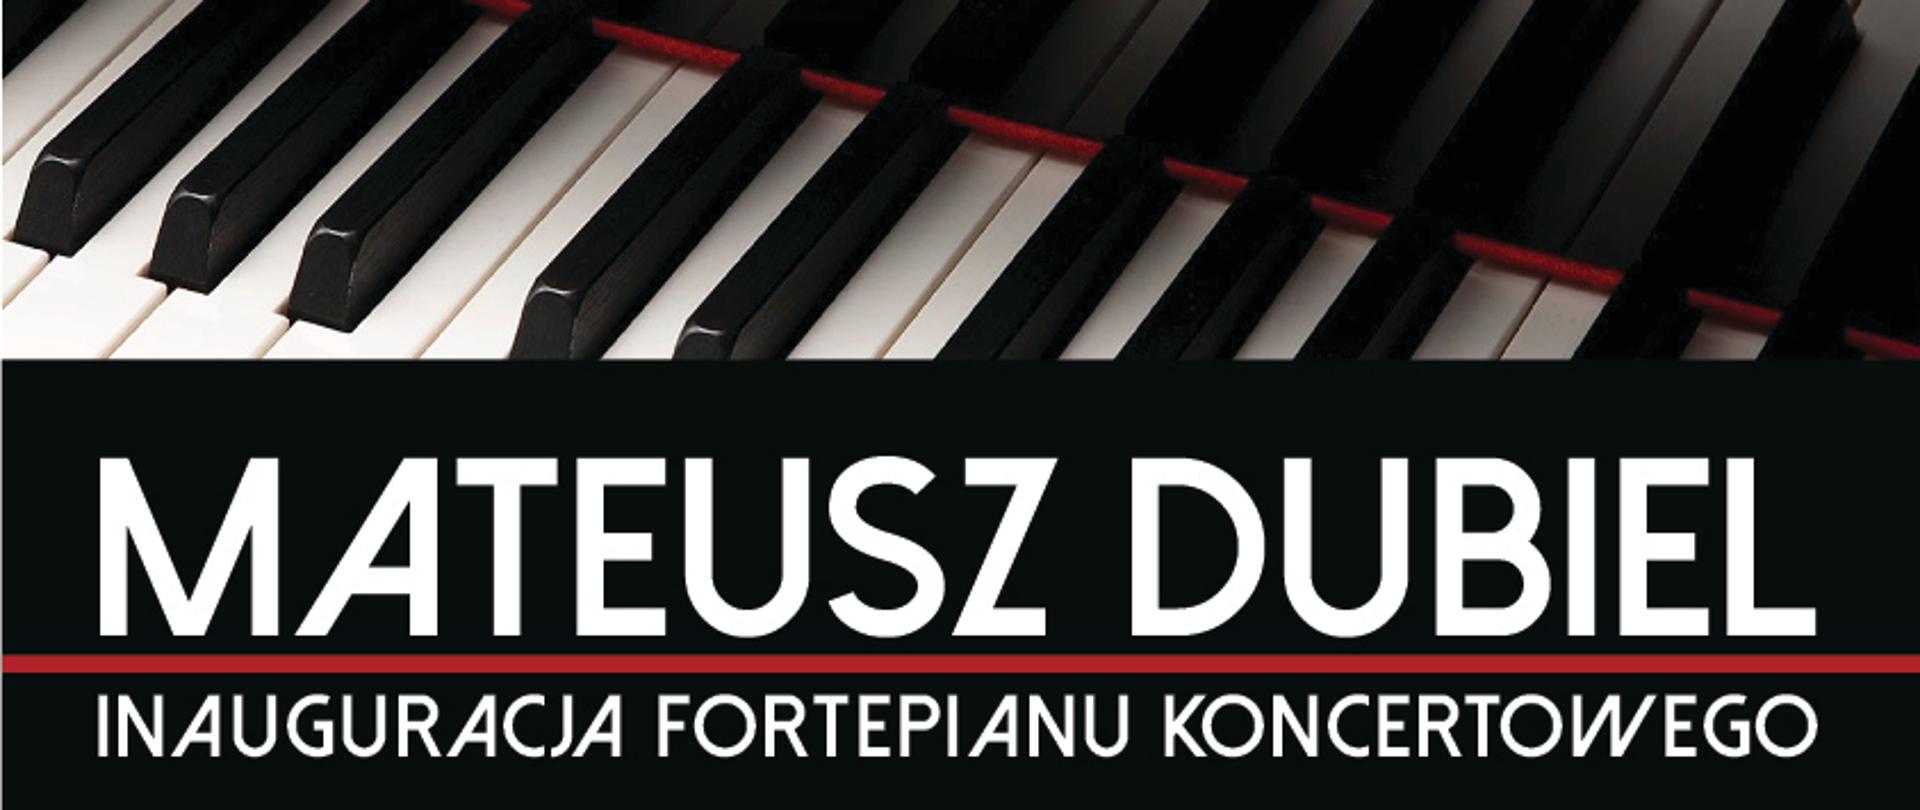 Plakat zapraszający na koncert inaugurujący fortepian koncertowy 